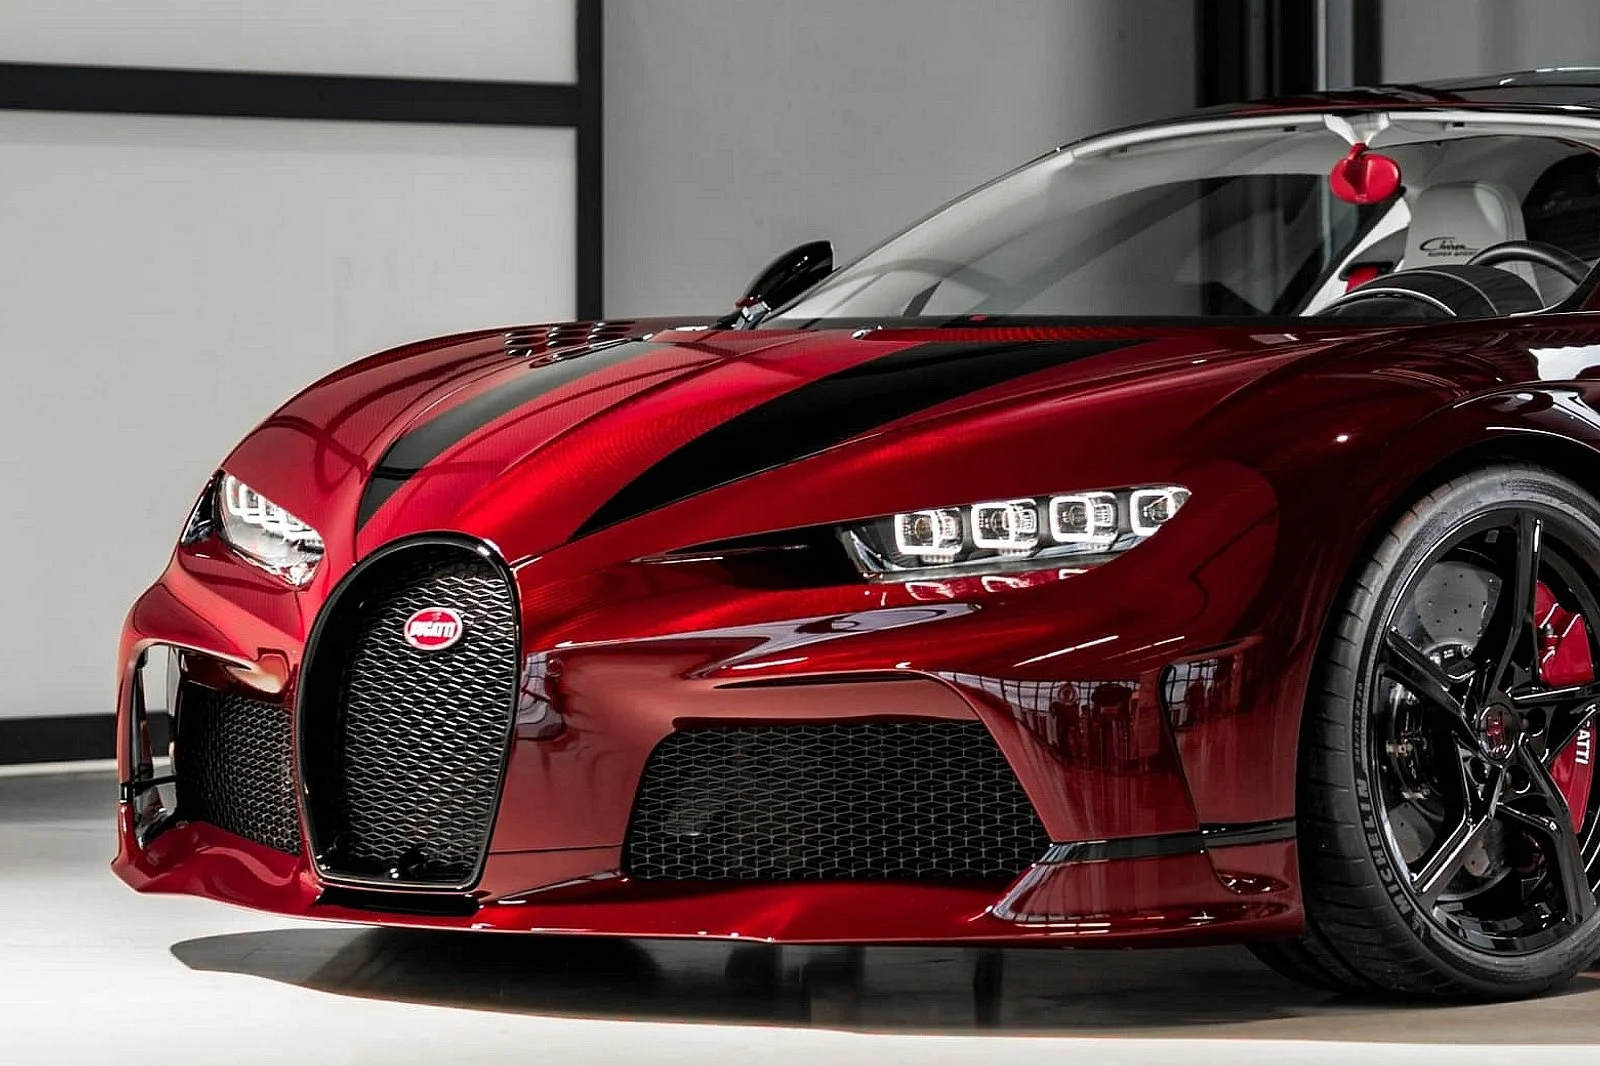 Red Carbon Bugatti Chiron Super Sport Red Dragon_1a